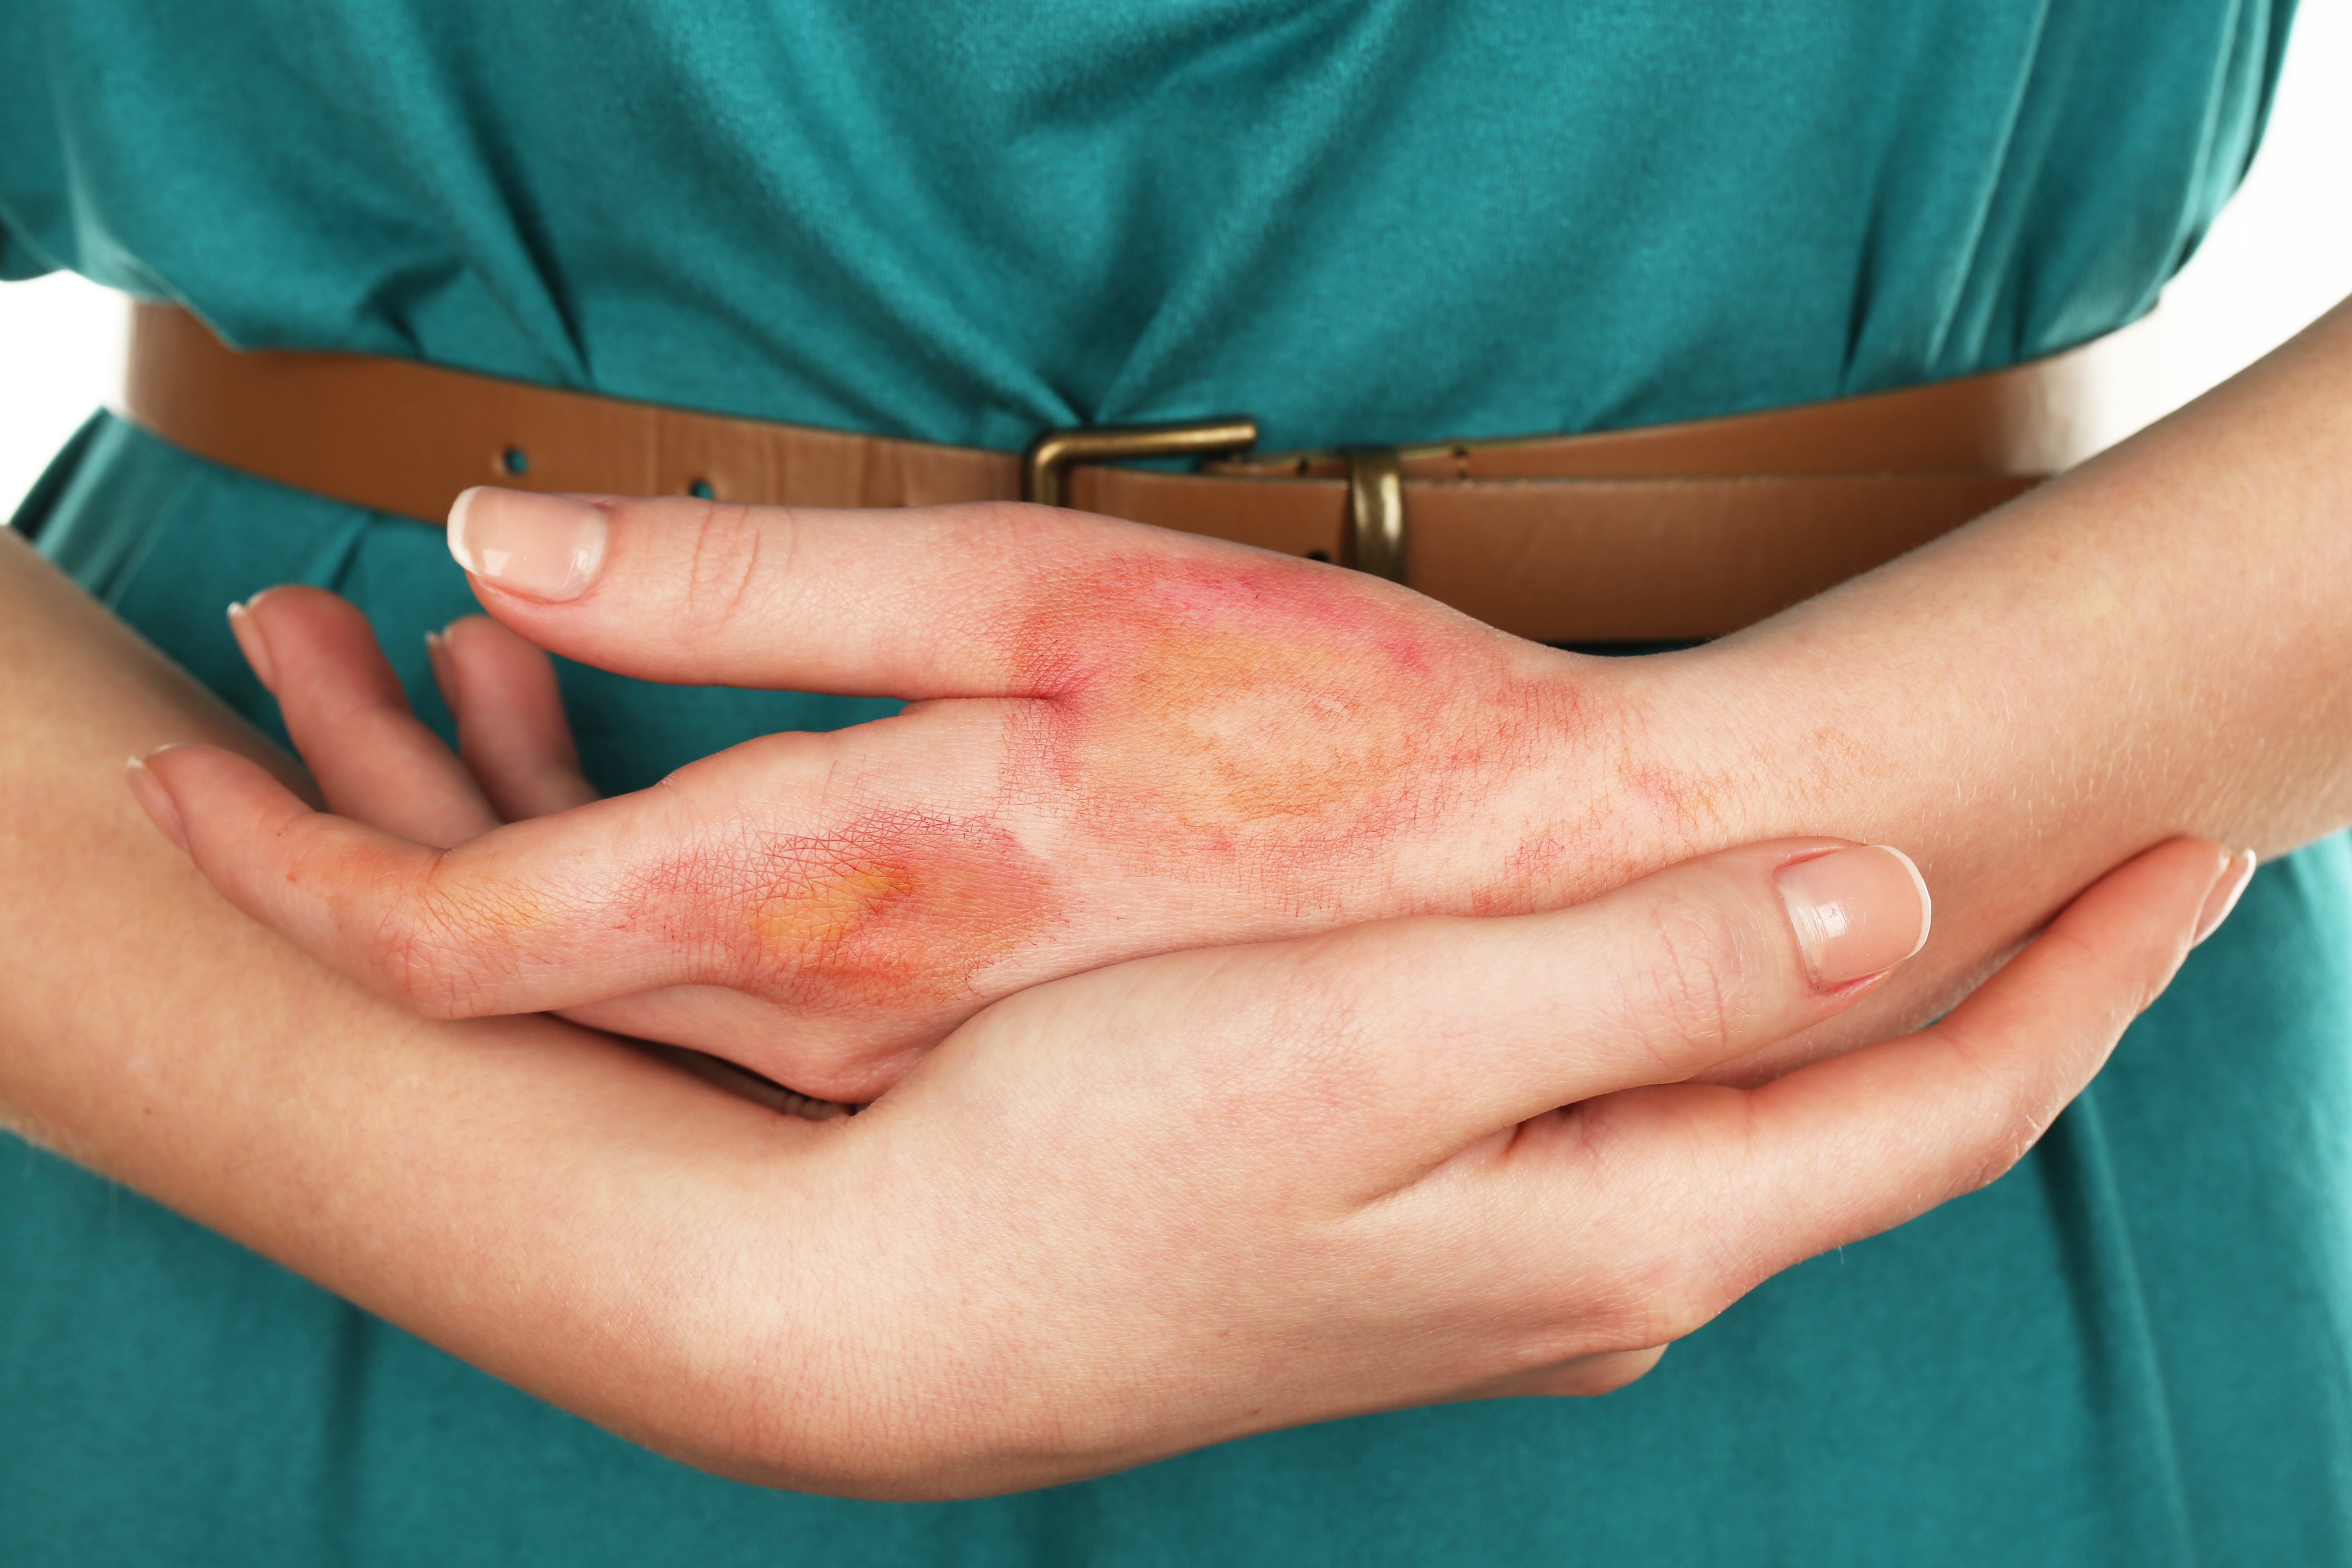 rash on woman's hand